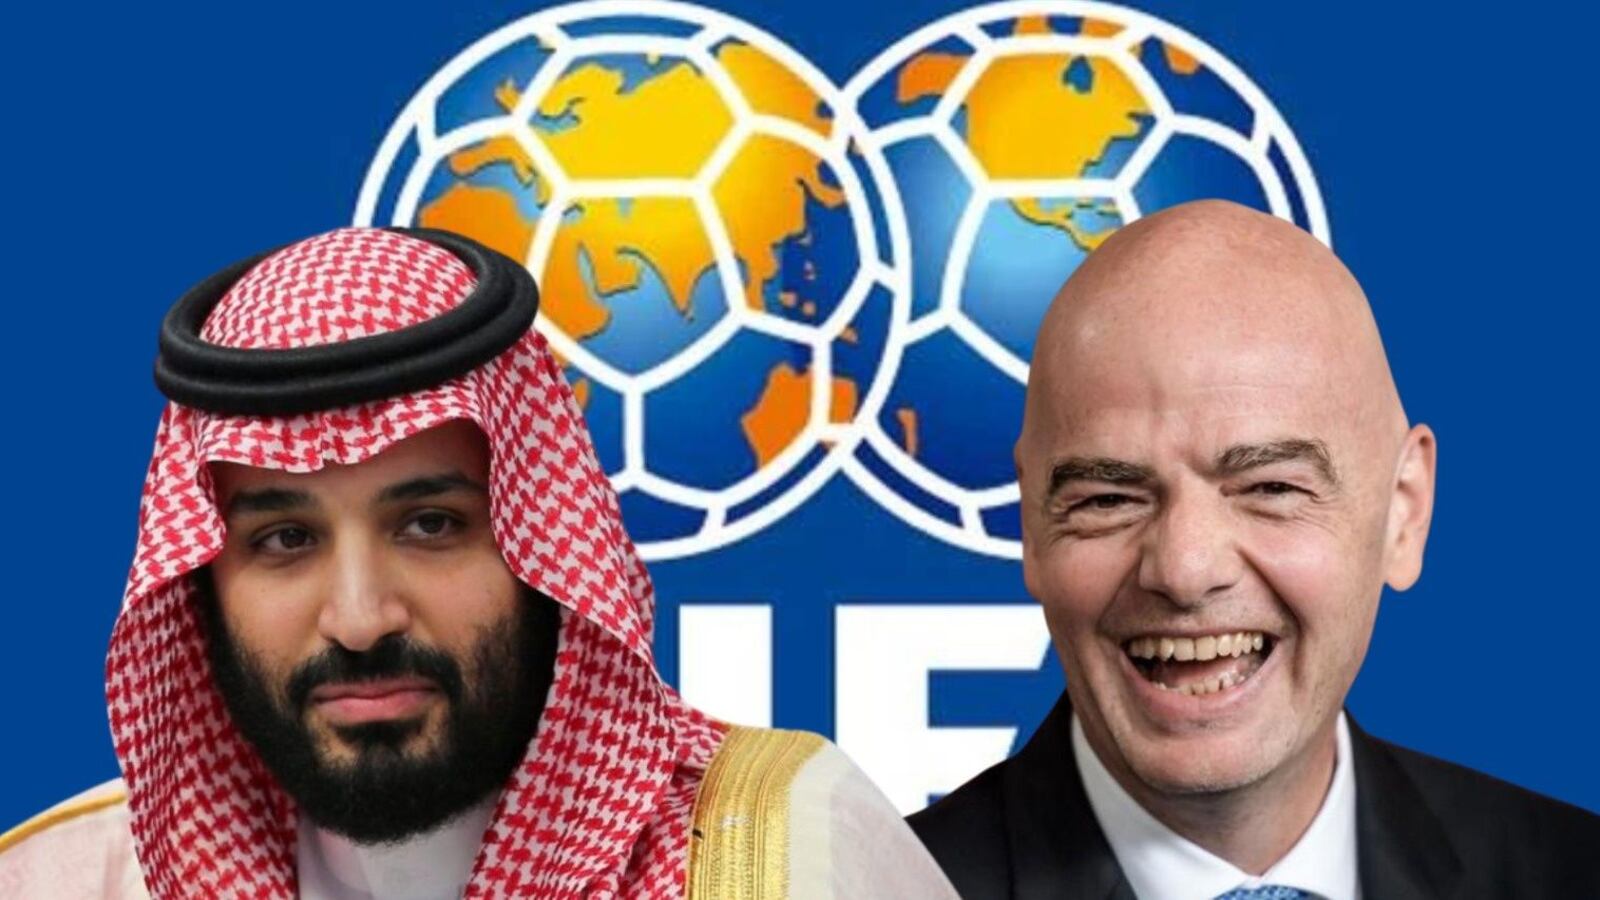 Mientras FIFA paga migaja por lesiones, los millones que ganará gracias a Arabia